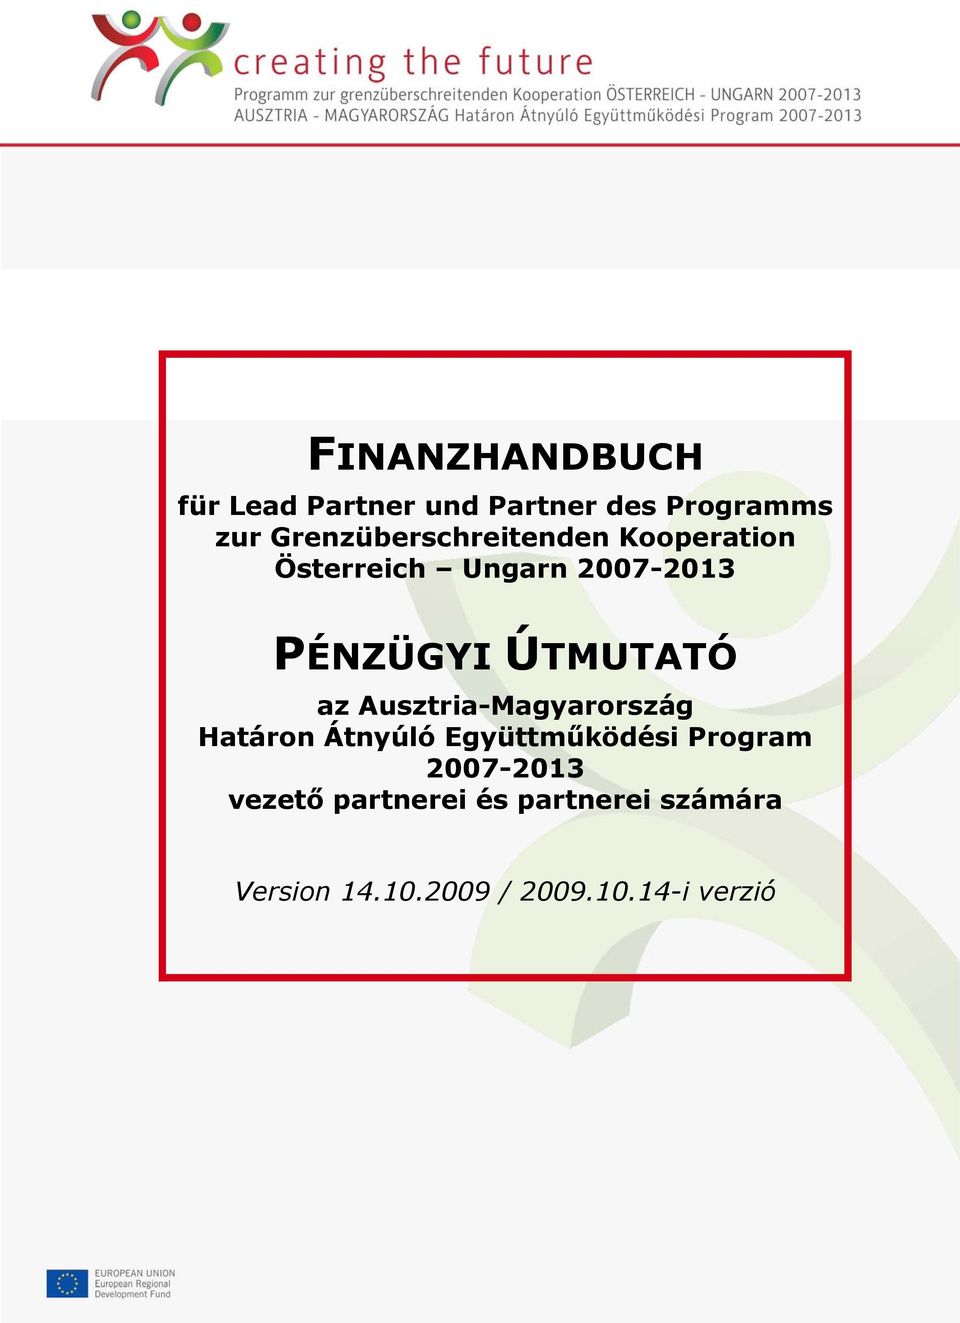 Ausztria-Magyarország Határon Átnyúló Együttműködési Program 2007-2013 vezető partnerei és